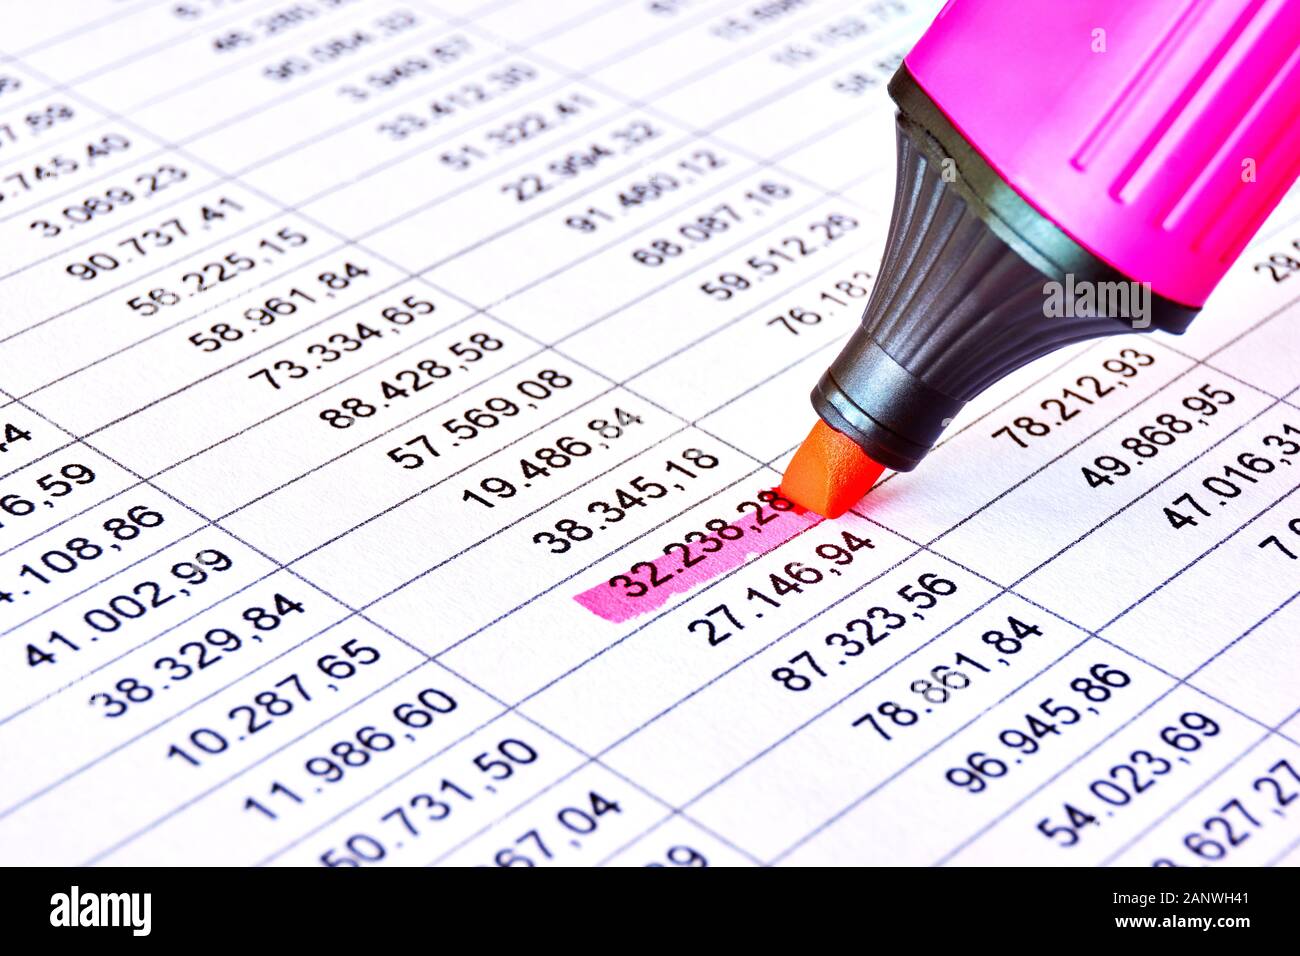 Contrassegno rosa rosso su un foglio con tabella dati numerici finanziari e numeri contrassegnati. Concetto di contabilità, bilancio, utile, revisione fiscale e finanziaria. Foto Stock